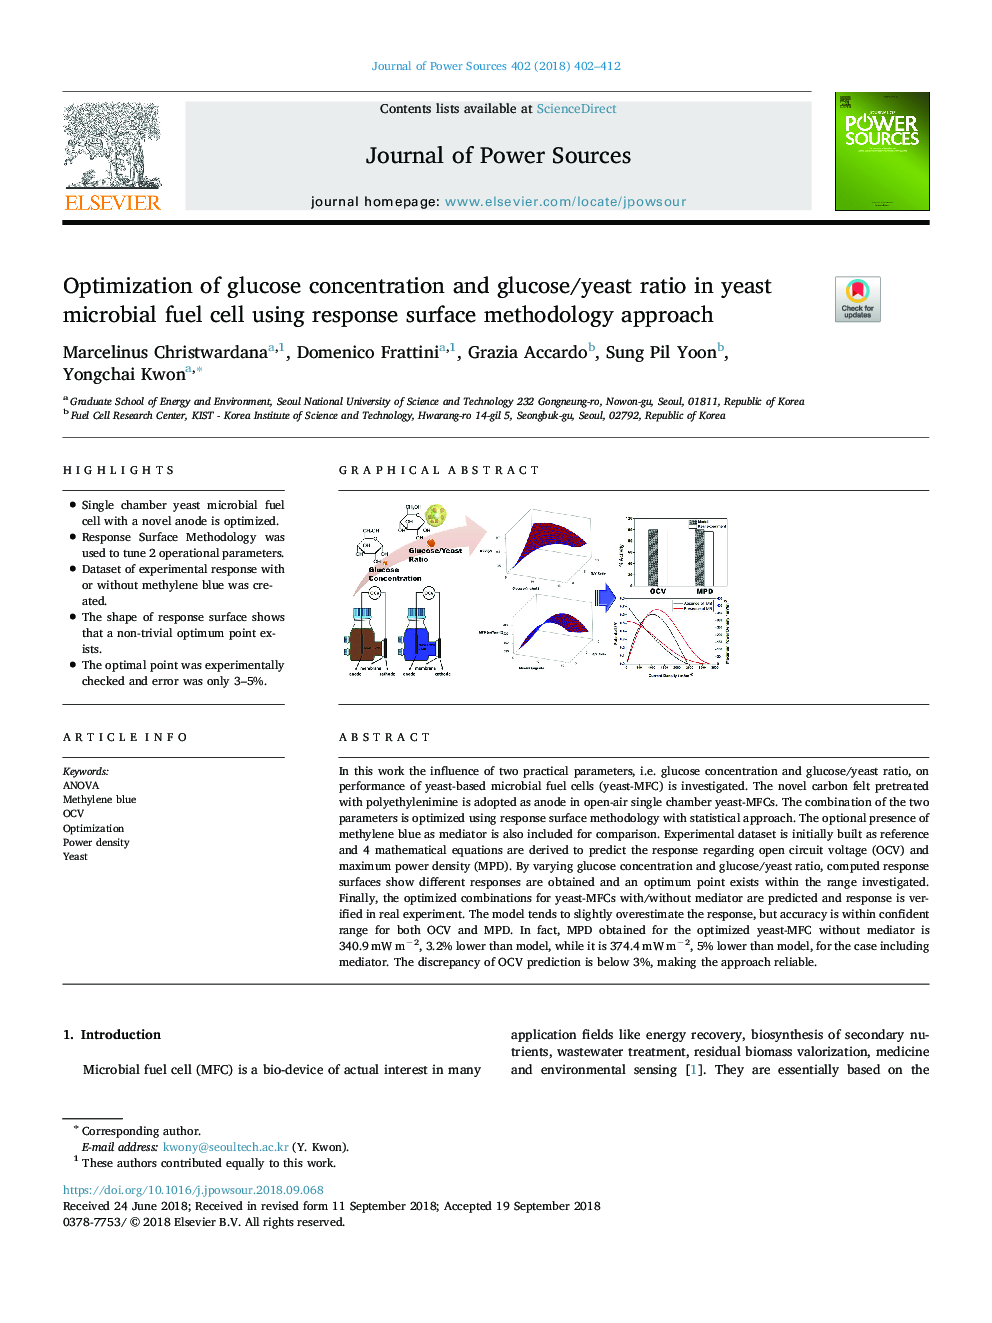 بهینه سازی غلظت گلوکز و نسبت گلوکز / مخمر در سلول های سوختی میکروبی مخمر با استفاده از رویکرد روش پاسخ سطحی